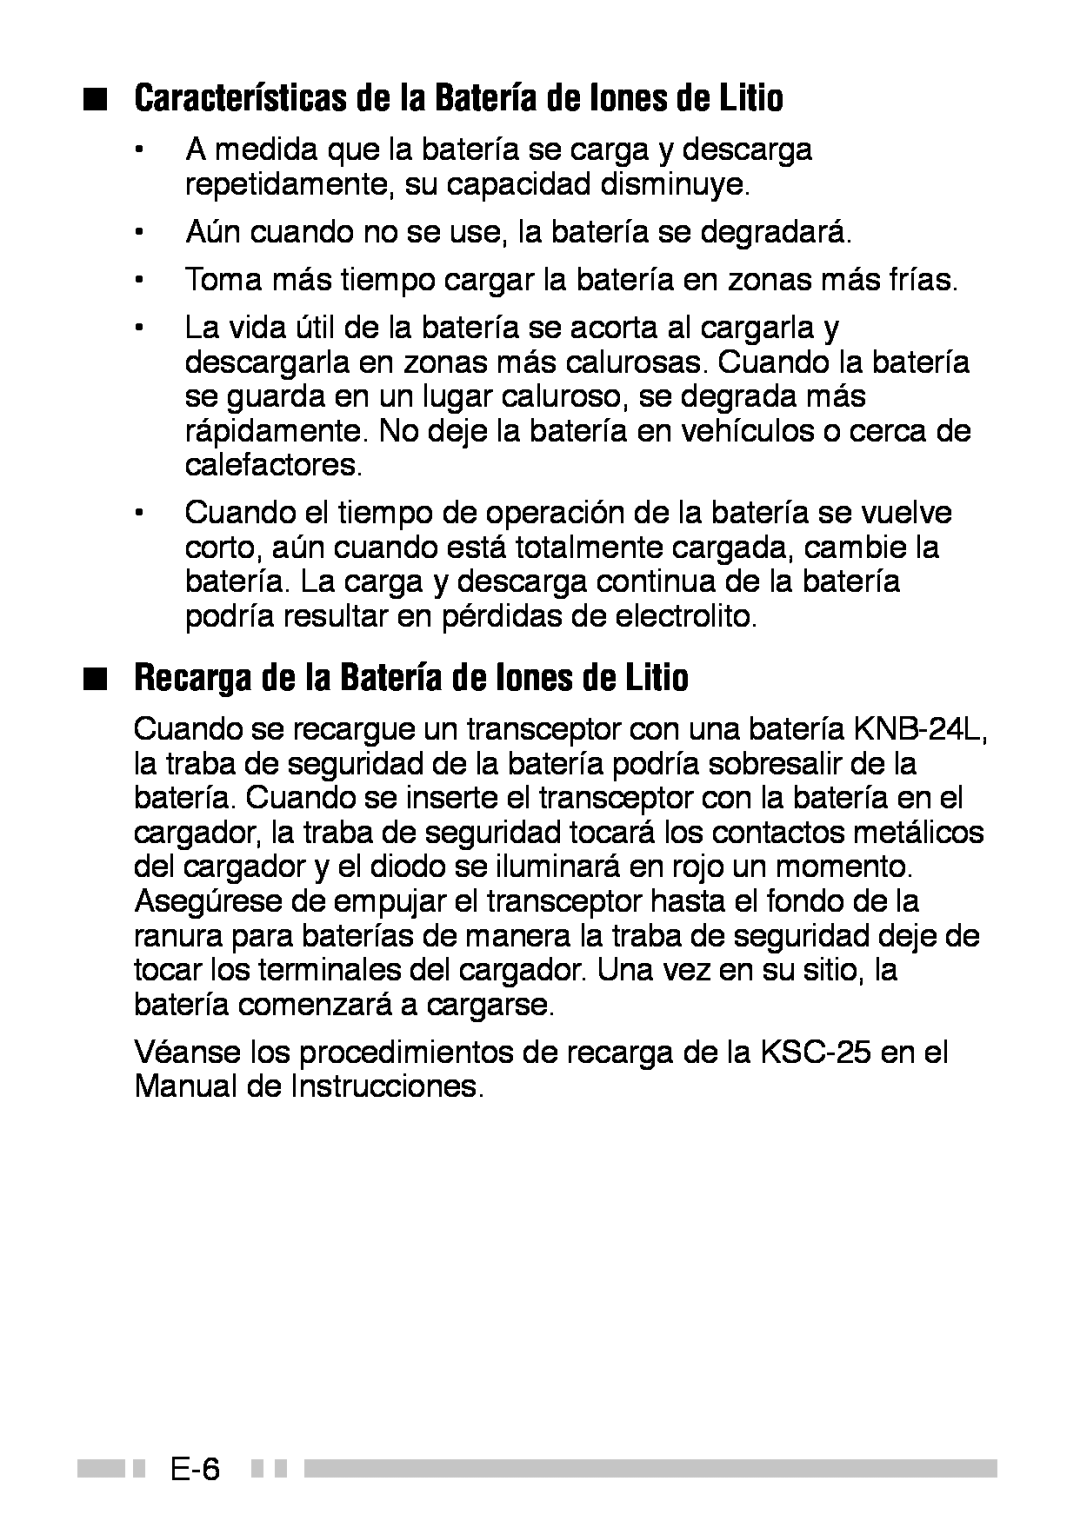 Kenwood TK-3160 instruction manual Características de la Batería de Iones de Litio, Recarga de la Batería de Iones de Litio 